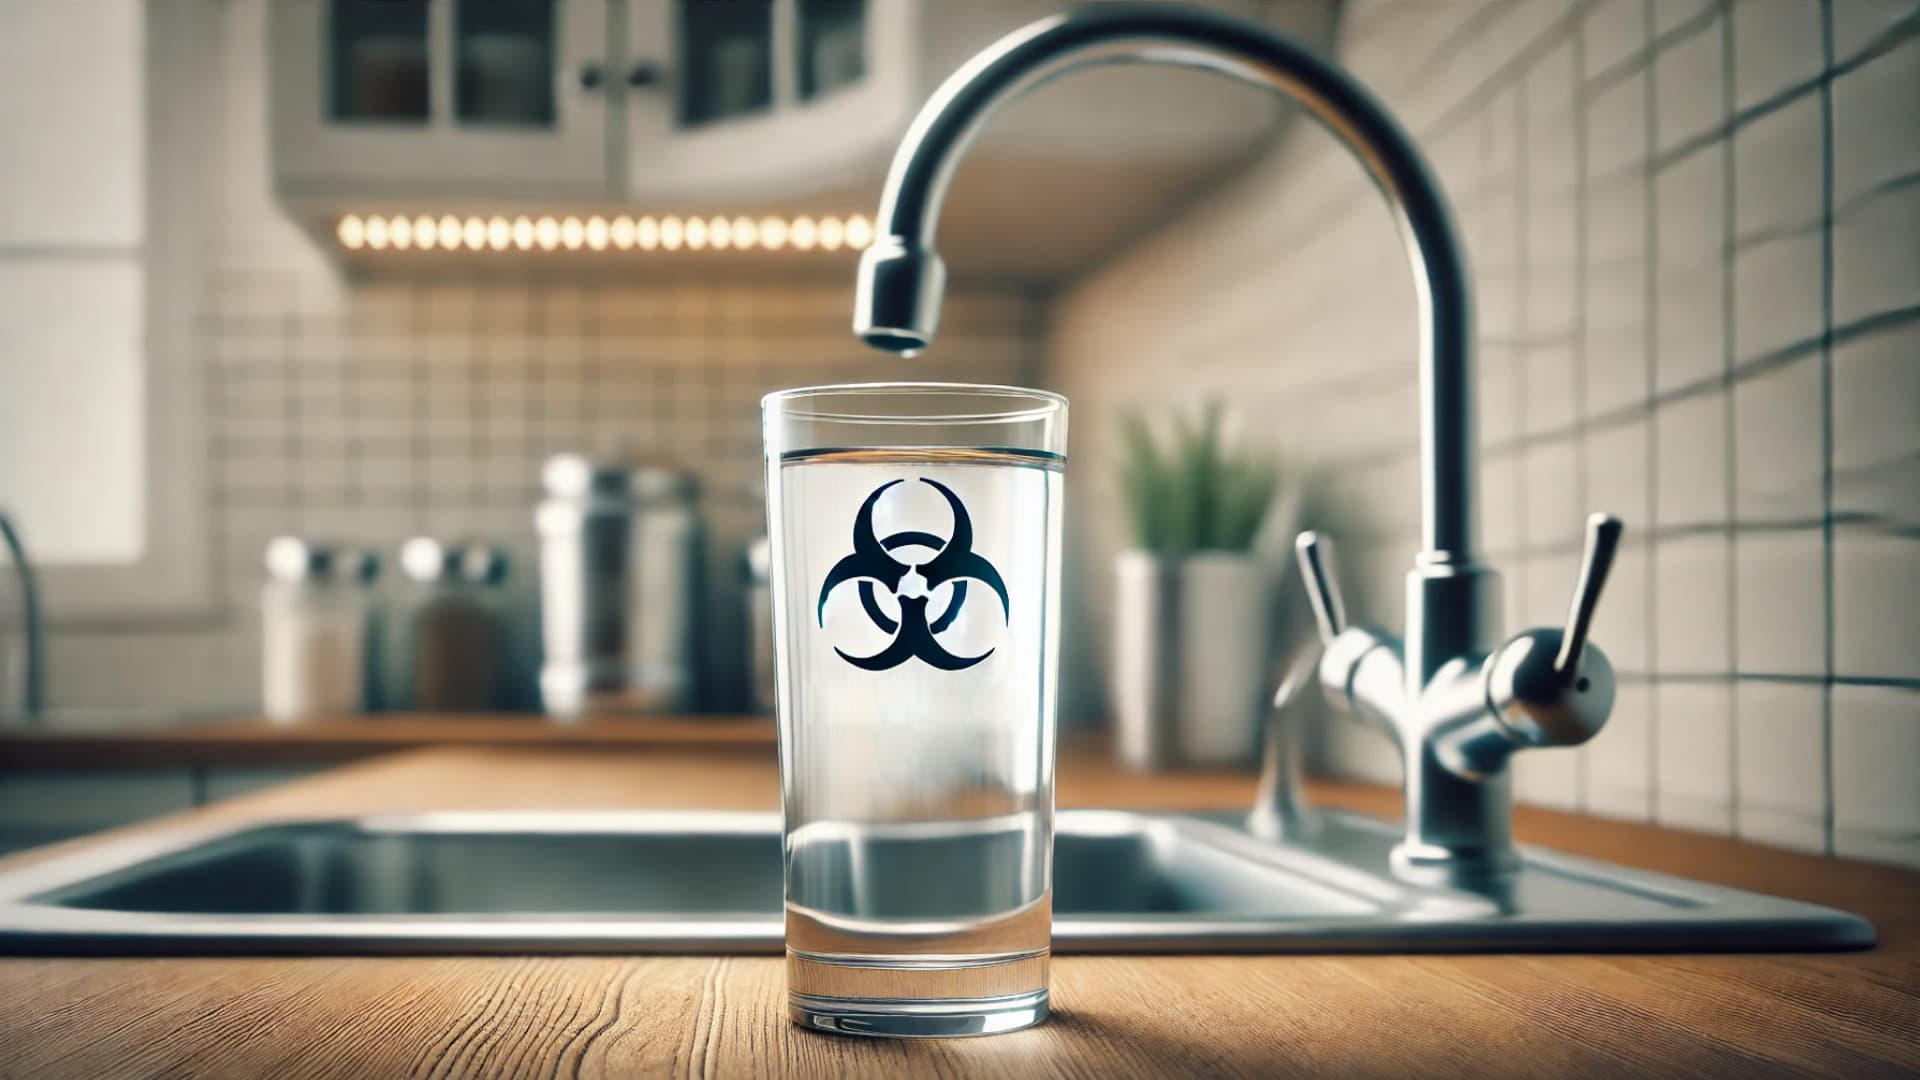 Wasserhahn in der Küche und davor steht ein Glas Trinkwasser mit einem Biohazard-Symbol darauf, das eine TFA Kontamination verdeutlicht.